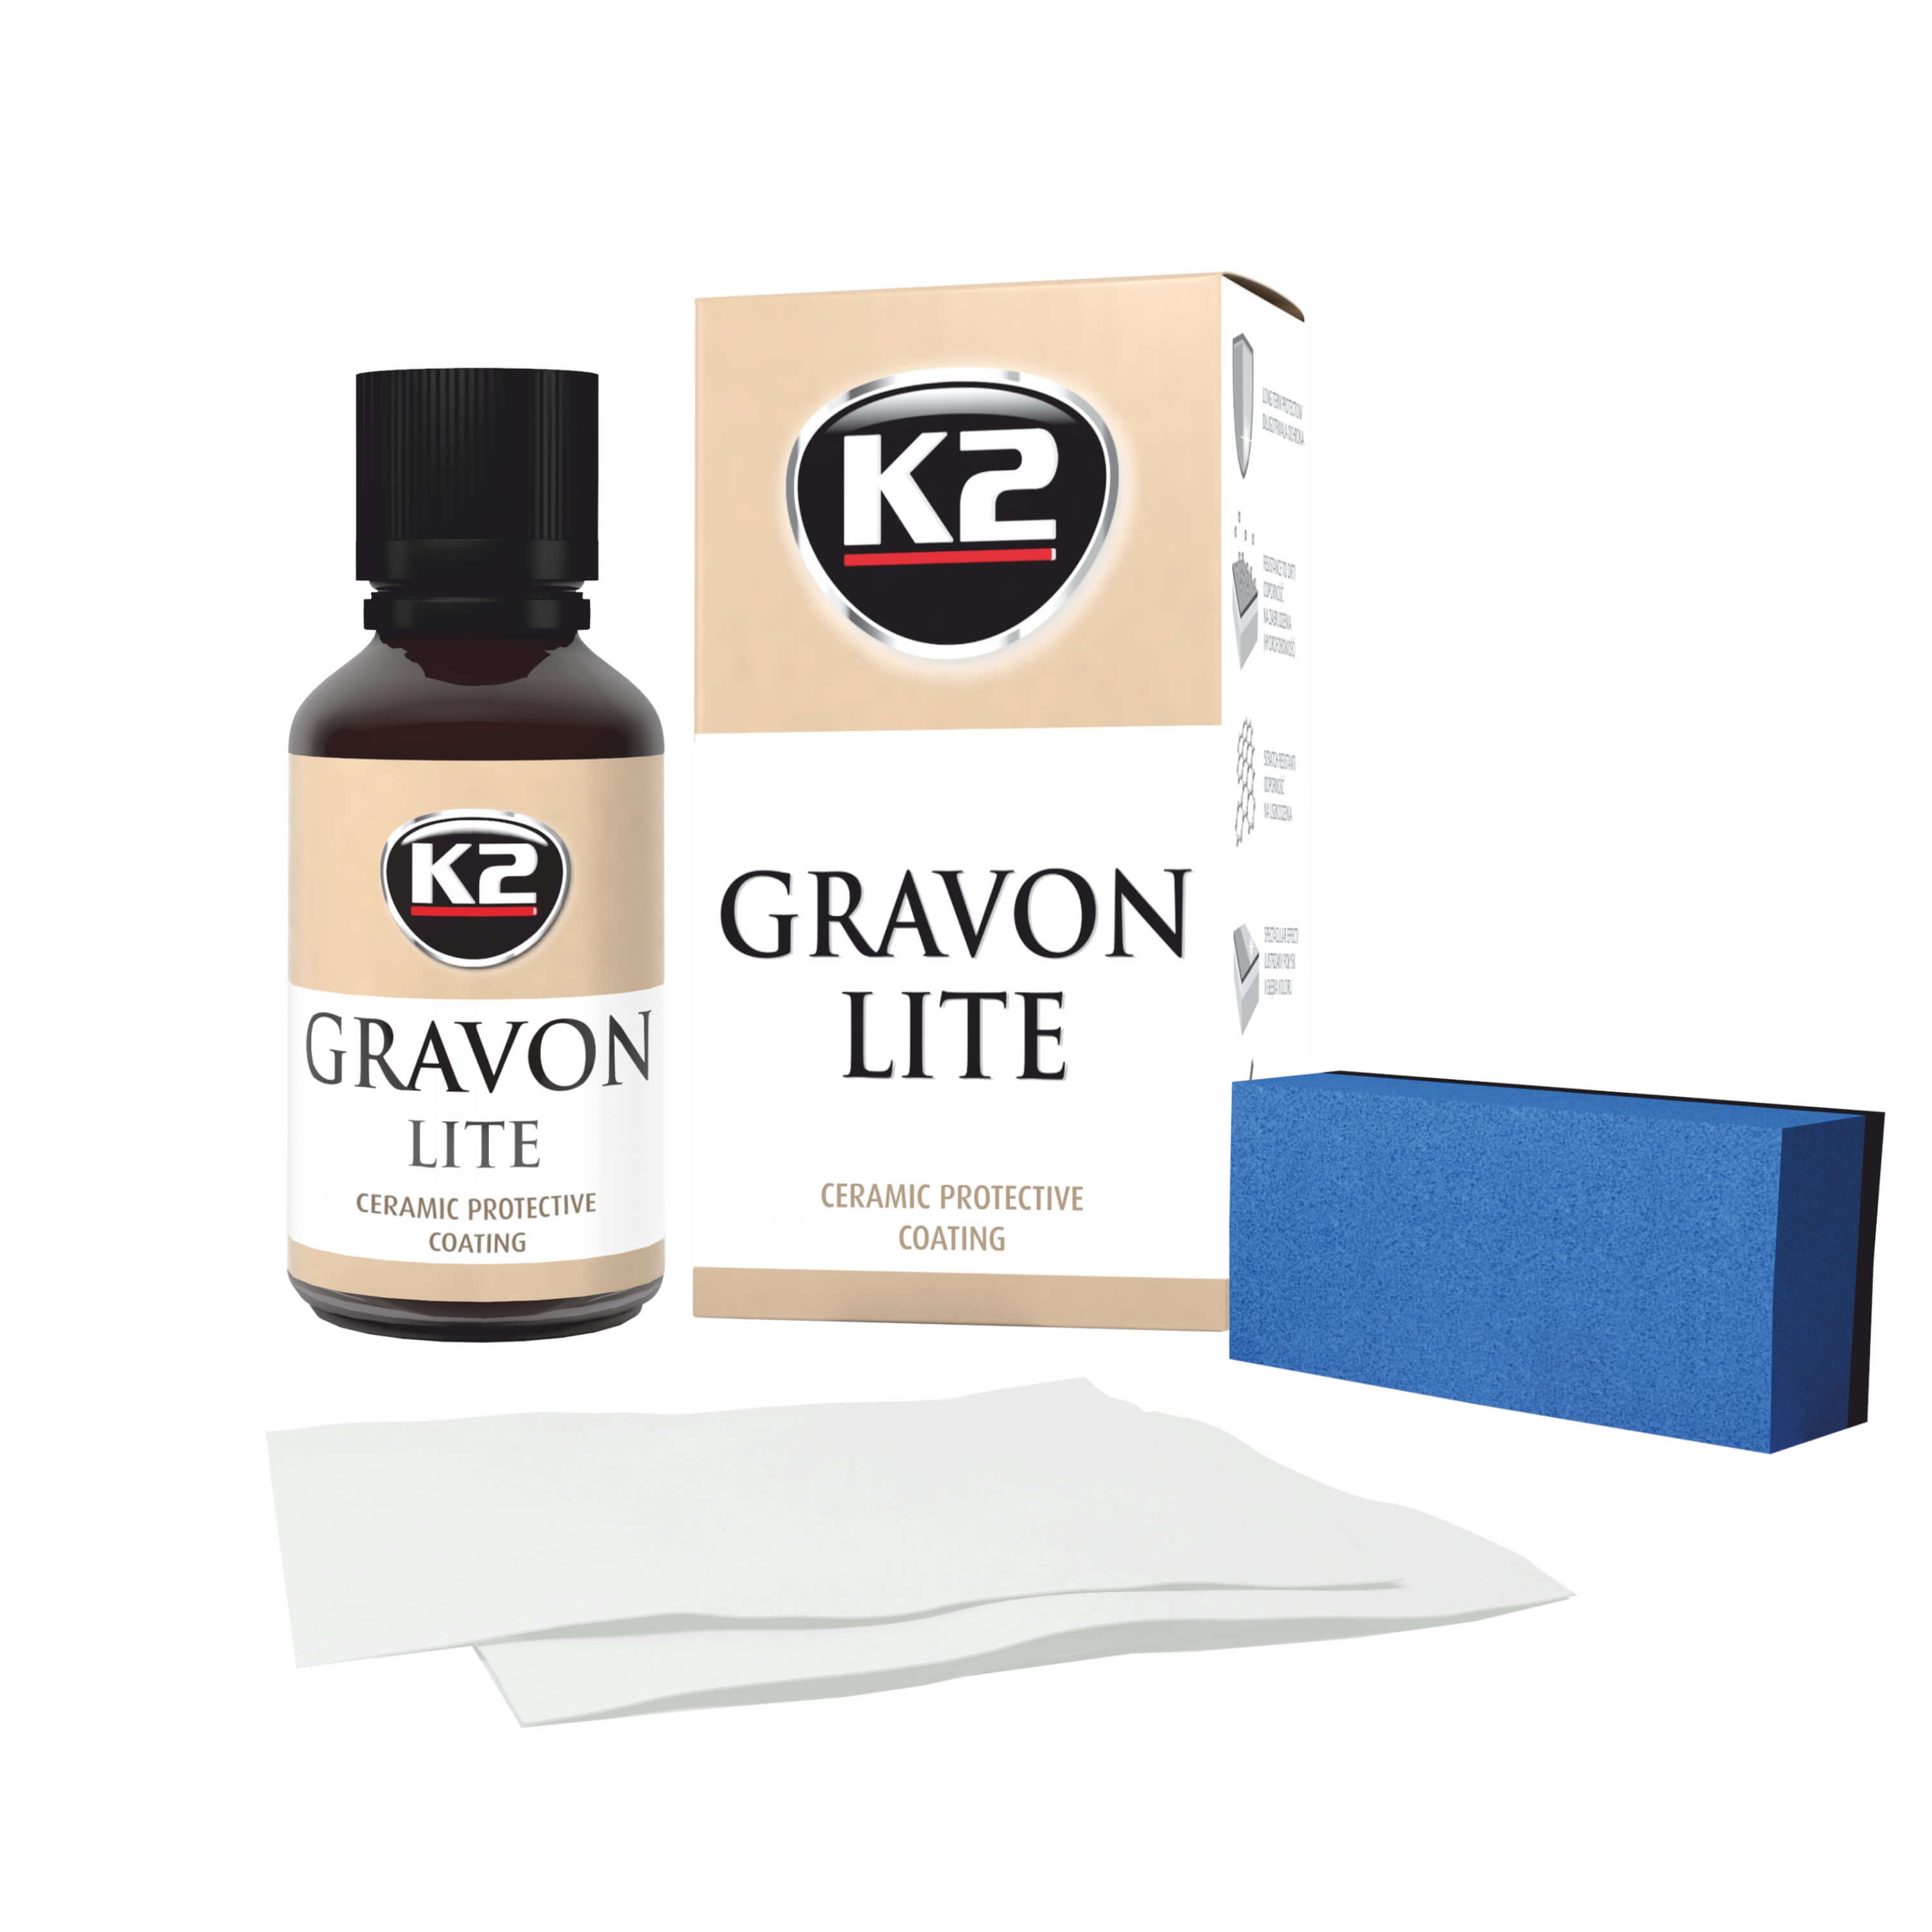 K2 GRAVON Lite